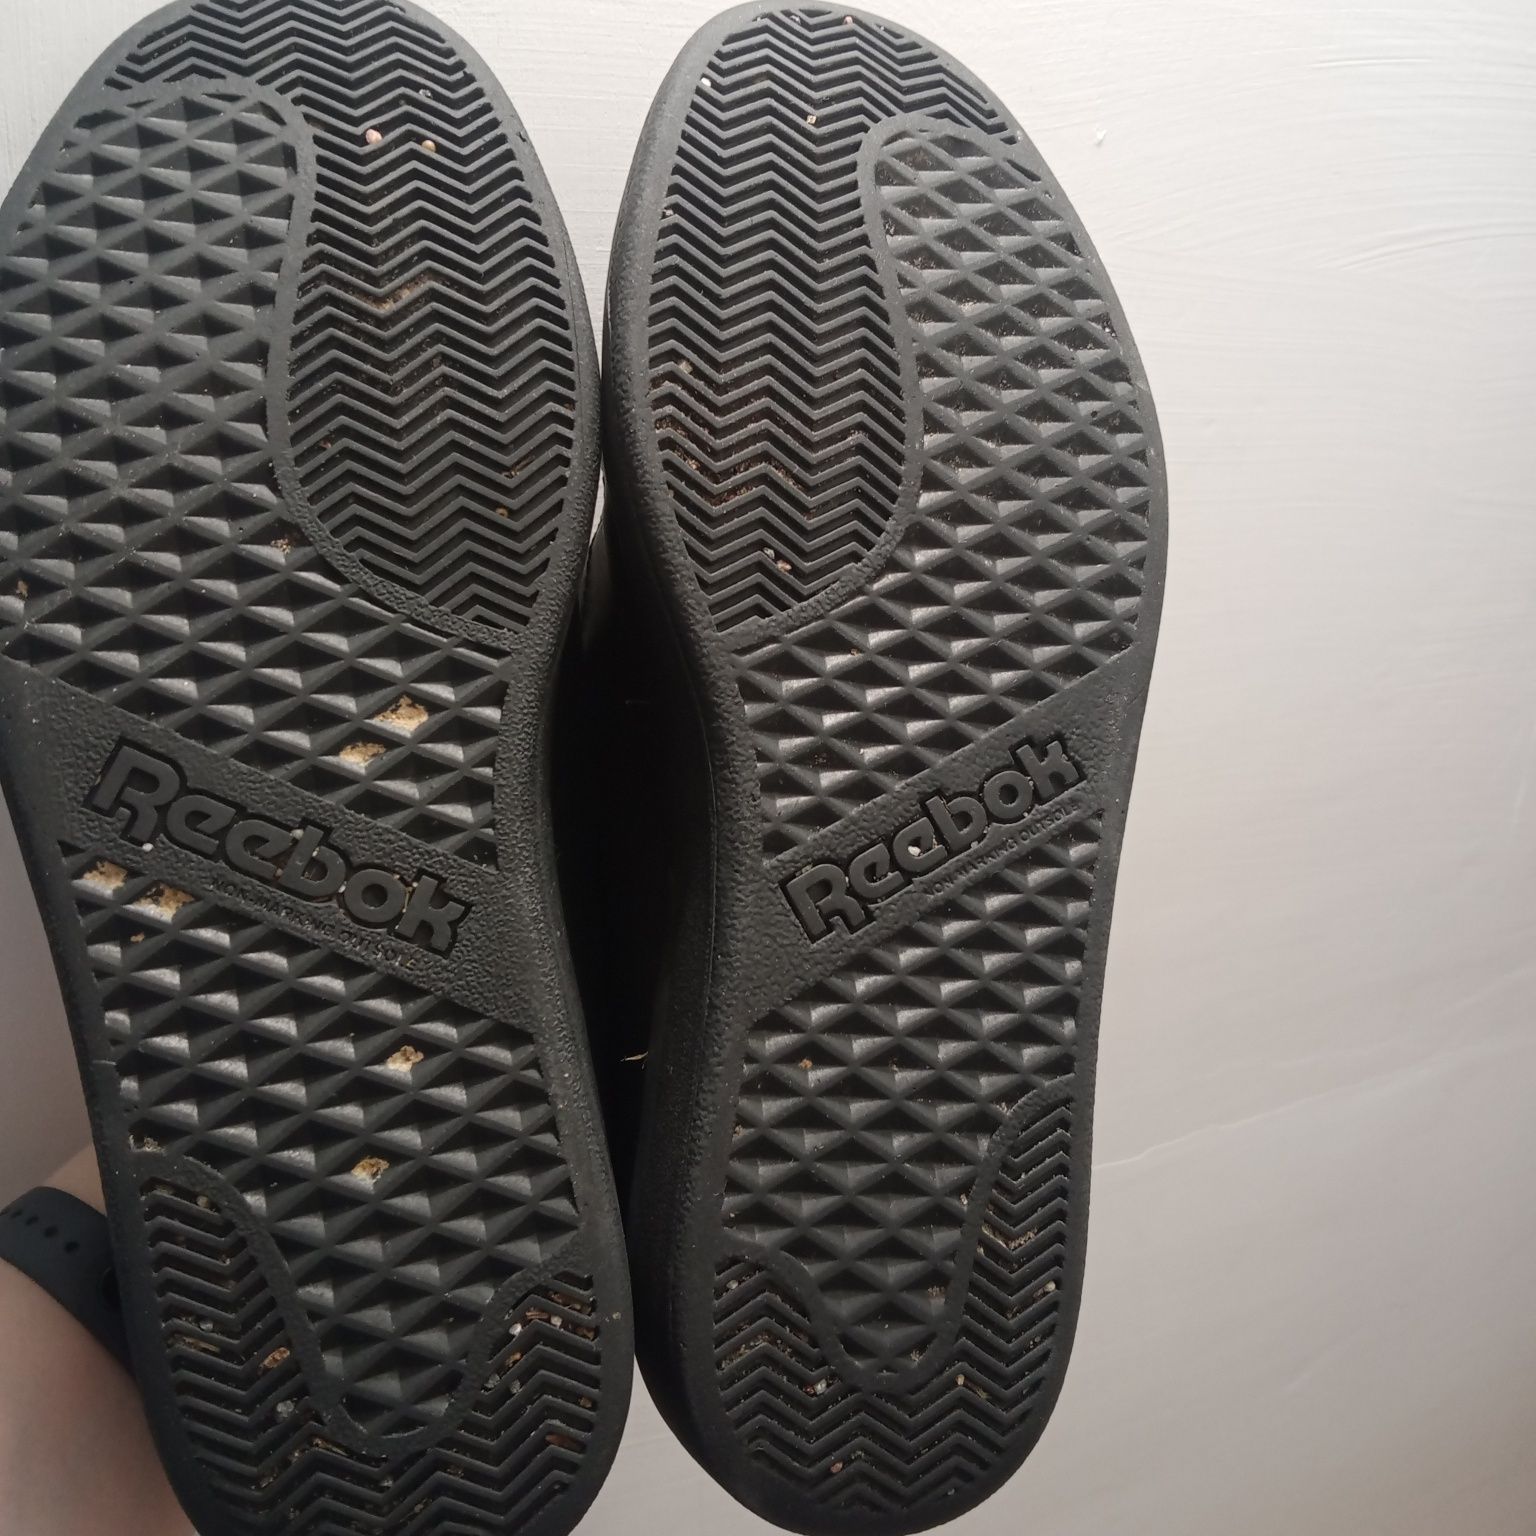 Czarne buty Reebok, rozmiar 39